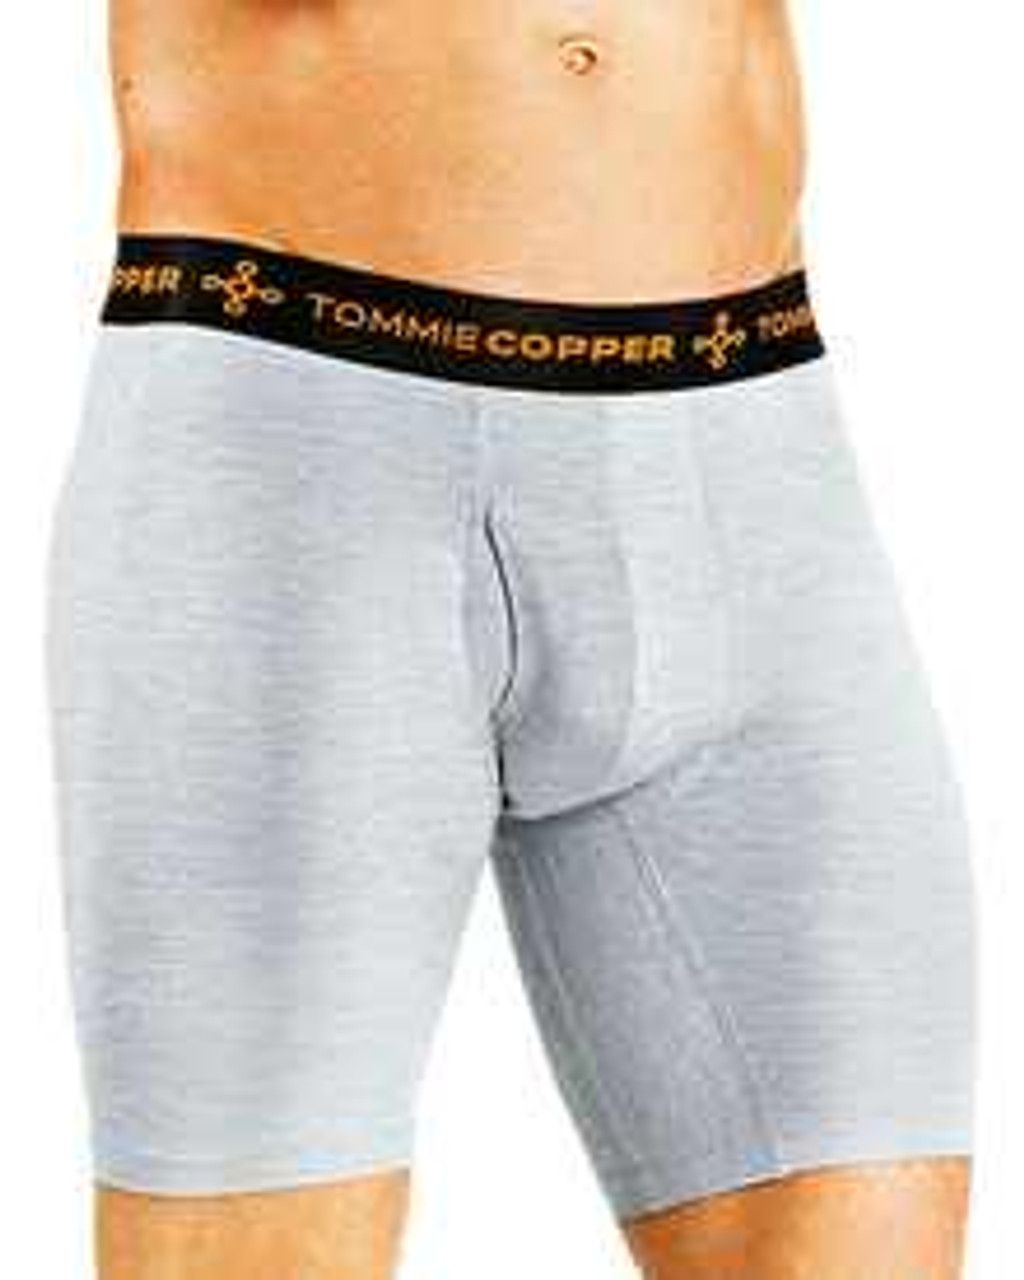 Compression Boxer Briefs  Shop Now at Tommie Copper®